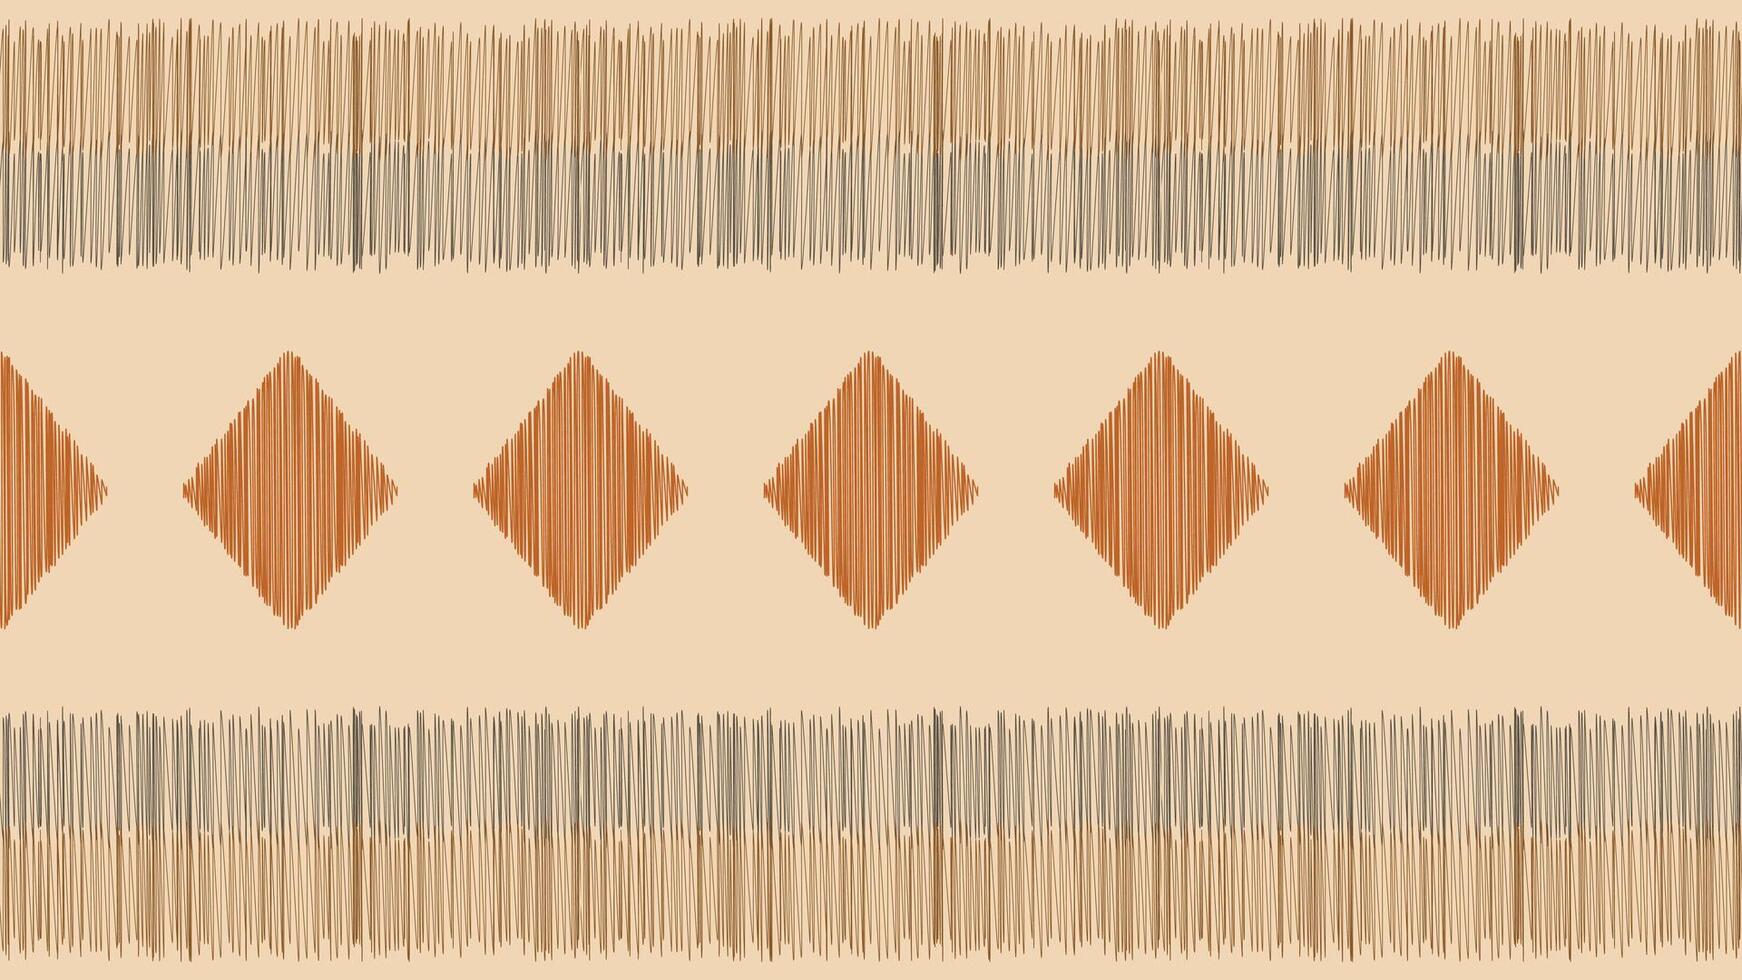 traditioneel etnisch ikat motief kleding stof patroon achtergrond meetkundig .Afrikaanse ikat borduurwerk etnisch patroon bruin room achtergrond behang. abstract,vector,illustratie.textuur,frame,decoratie. vector